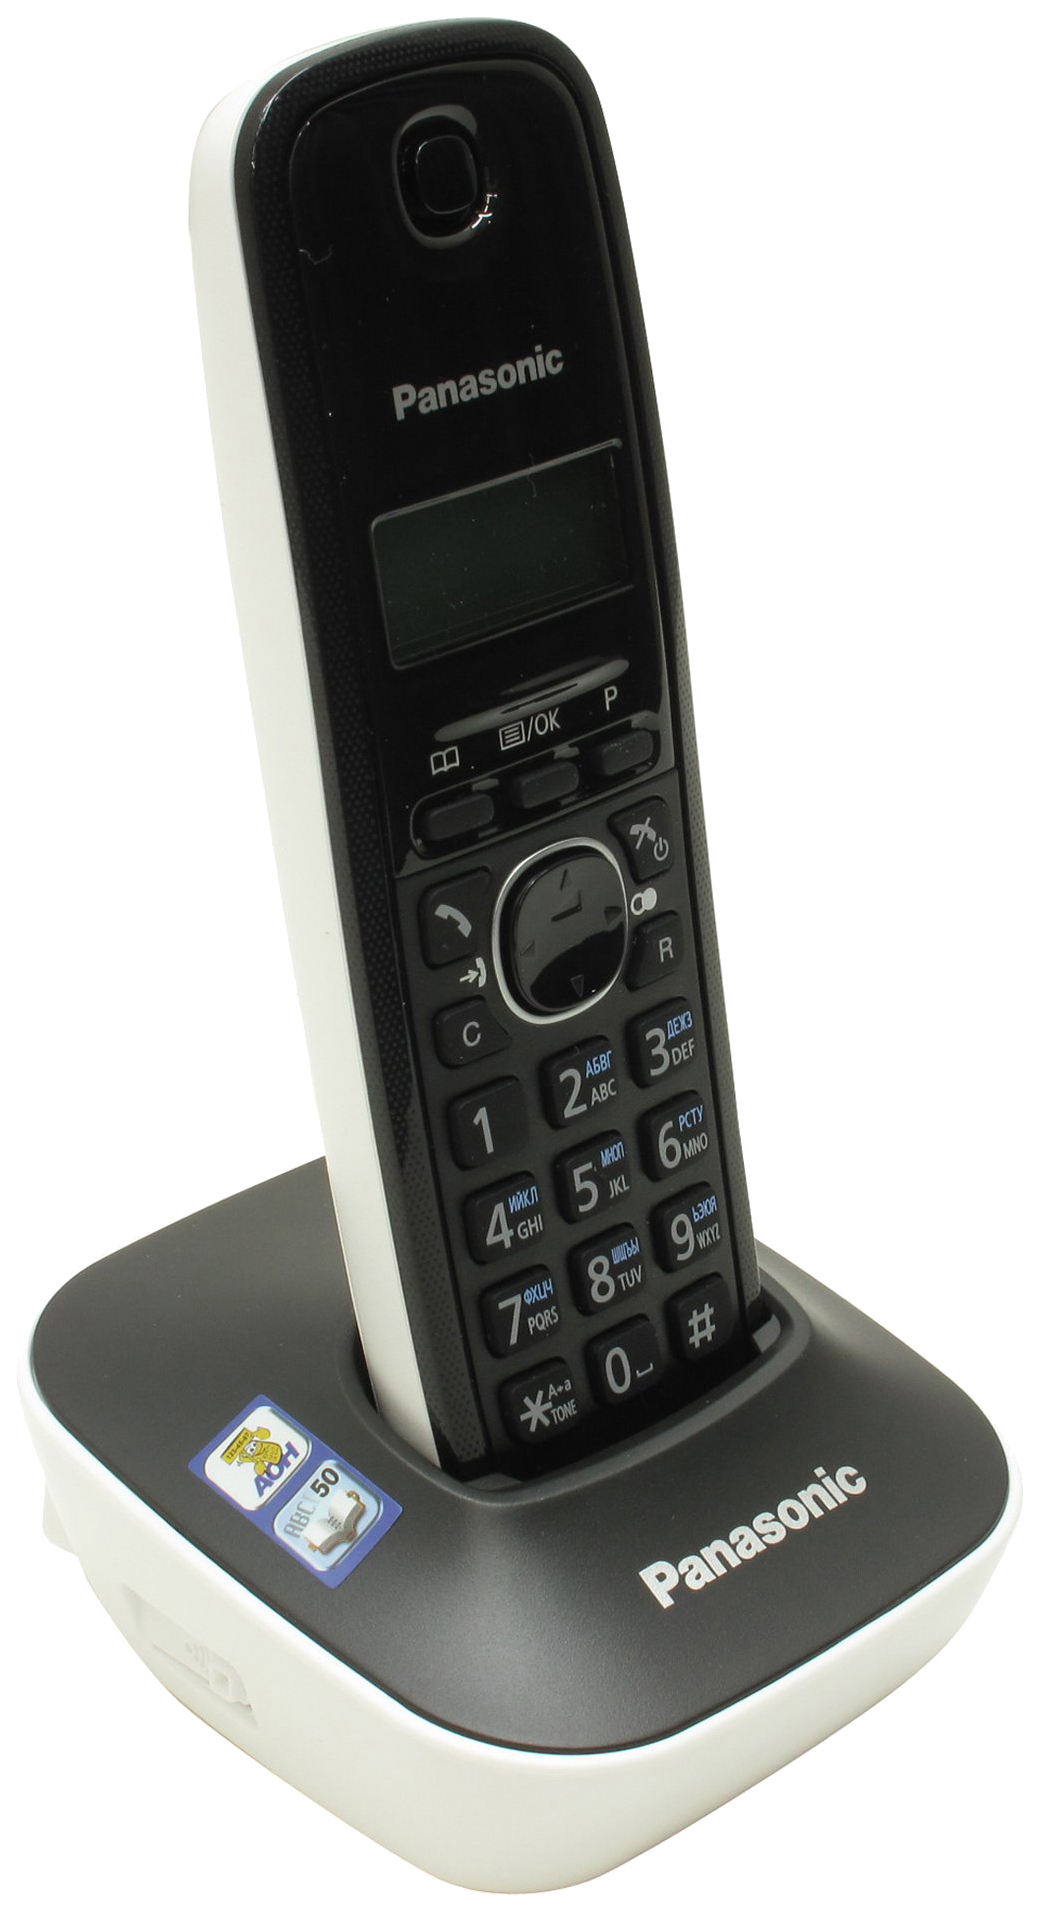 Телефоны стационарные радио. Радиотелефон Panasonic TG 1611ruh. Радиотелефон DECT Panasonic KX-tg1611ruh. Радиотелефон зфтфыщтшс ЛЧ еп 1611. Panasonic KX-tg1611ruw (белый).